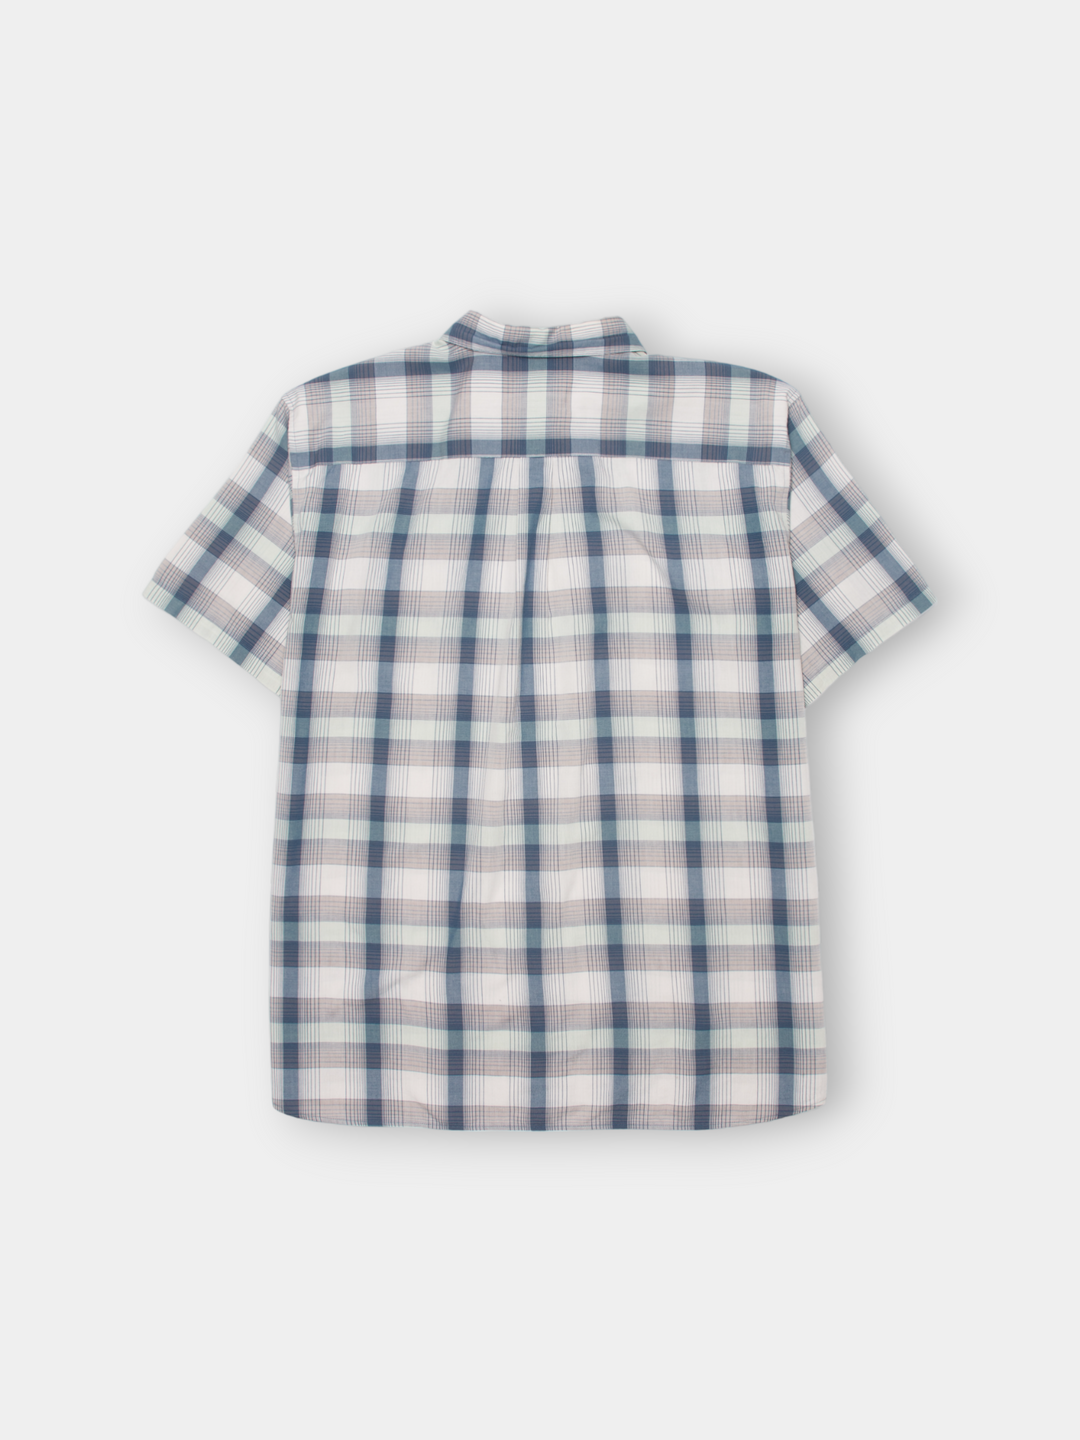 Vintage Patagonia Plaid Shirt (XL)